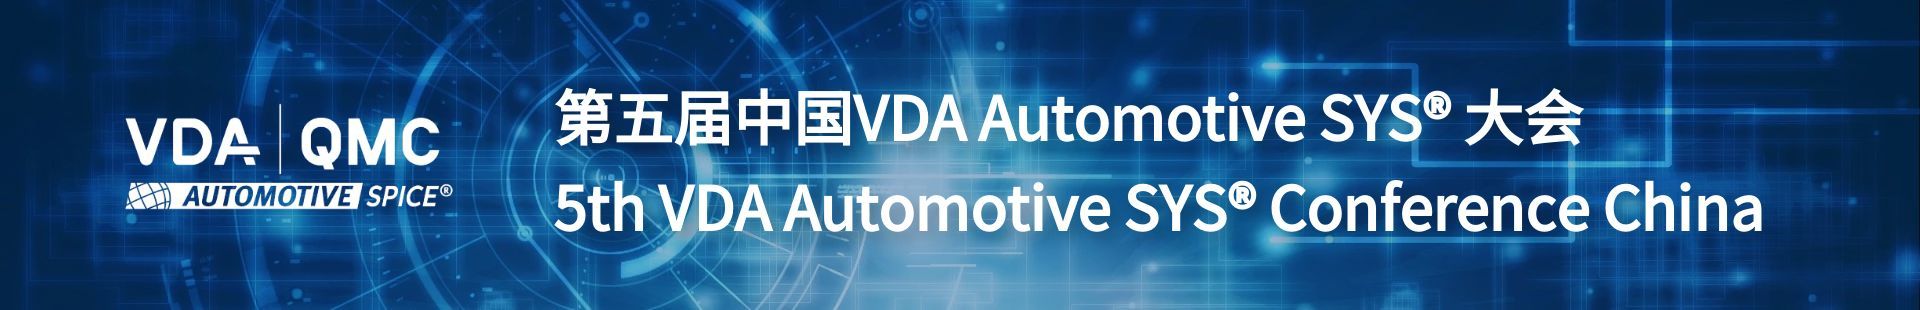 第五届中国VDA Automotive SYS® 大会